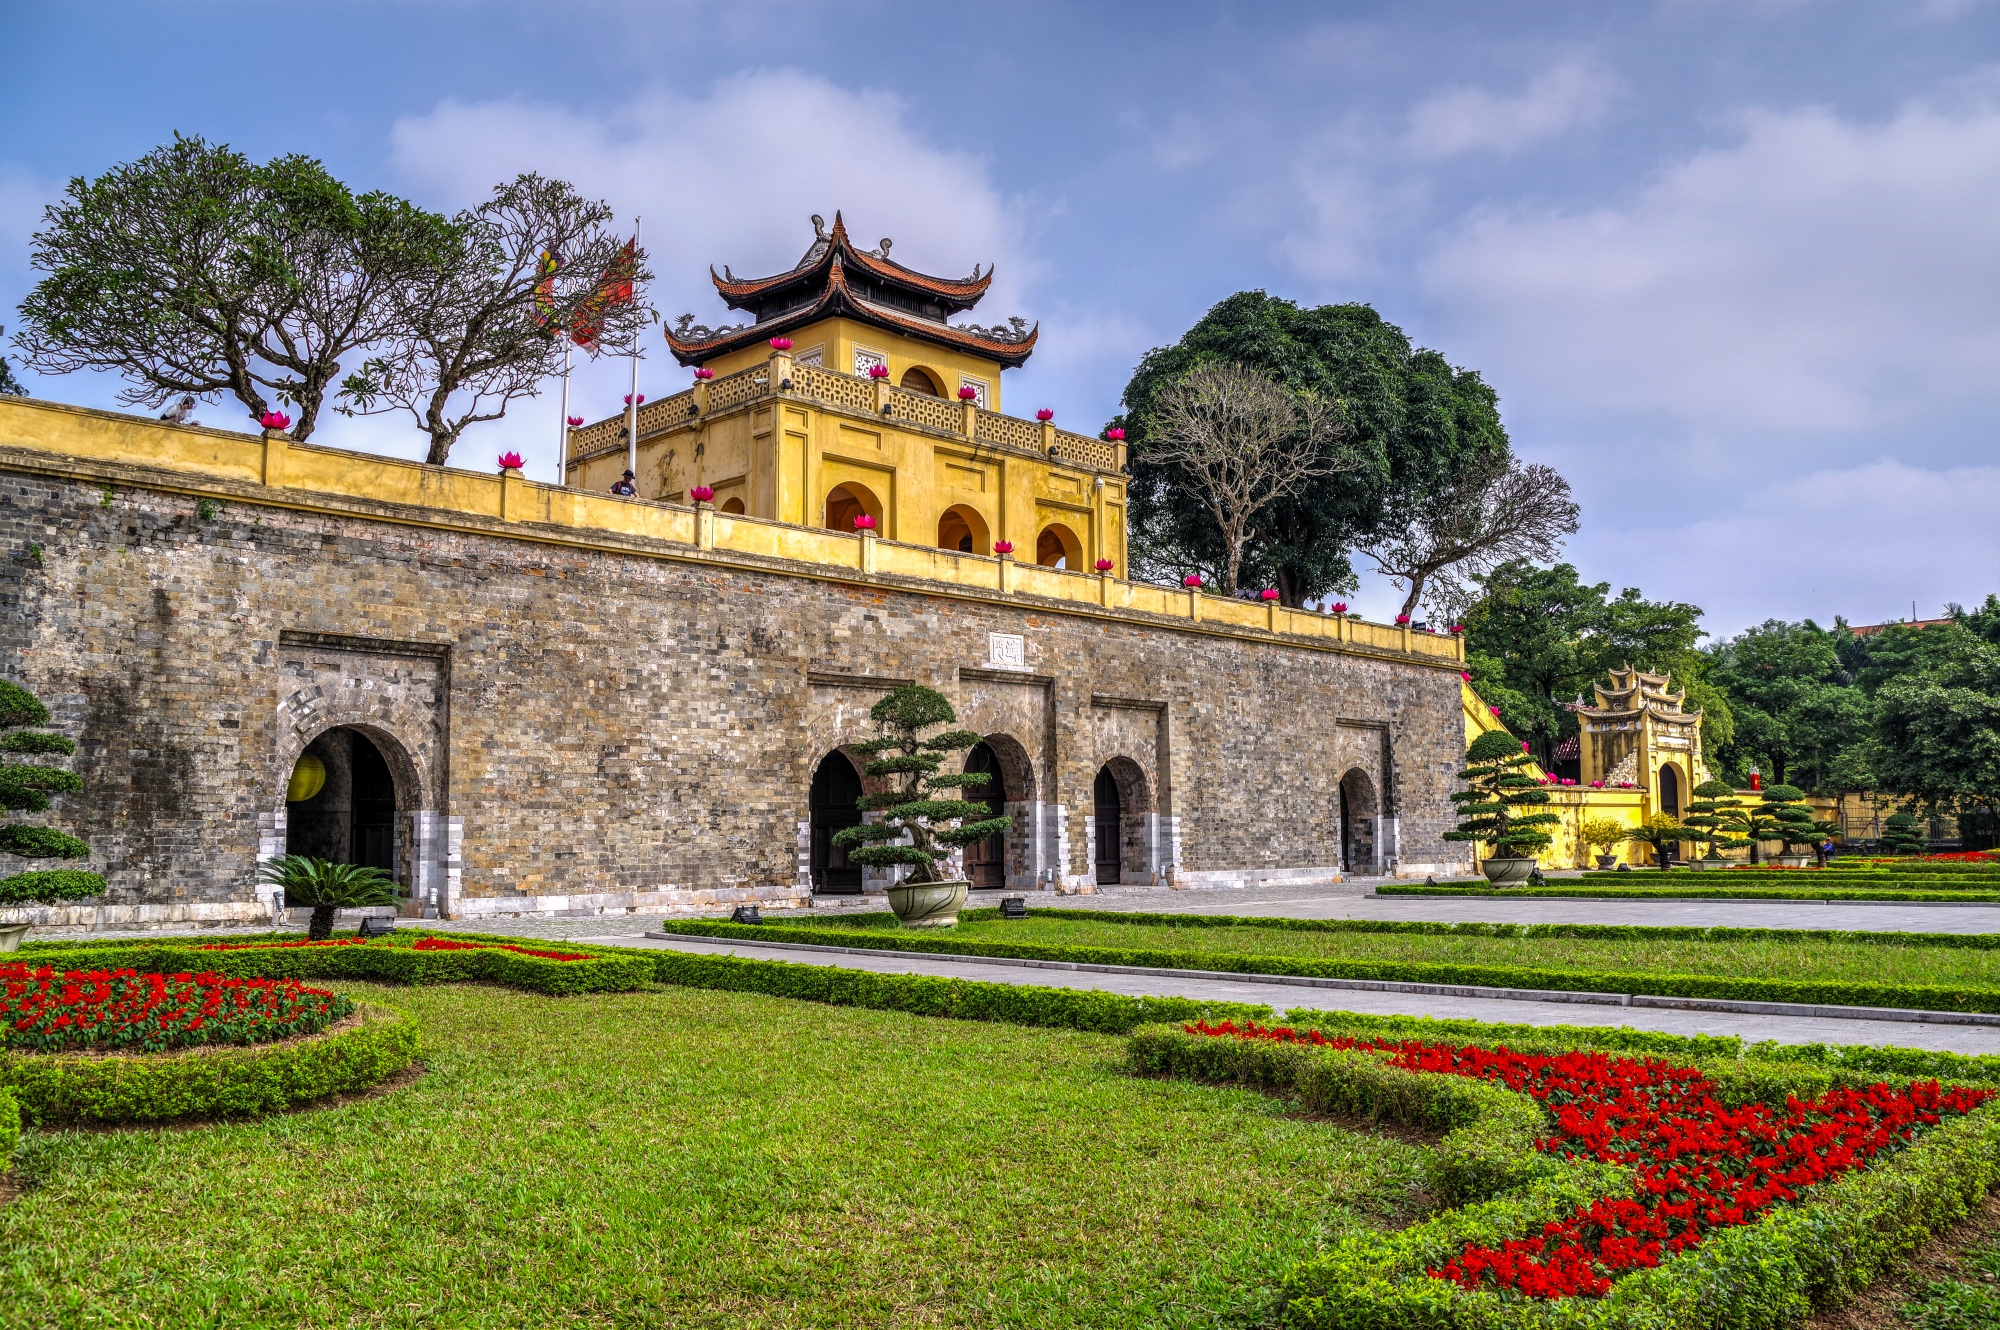 ベトナムの歴代王朝の都が置かれたタンロン遺跡。各時代の遺構が残る。